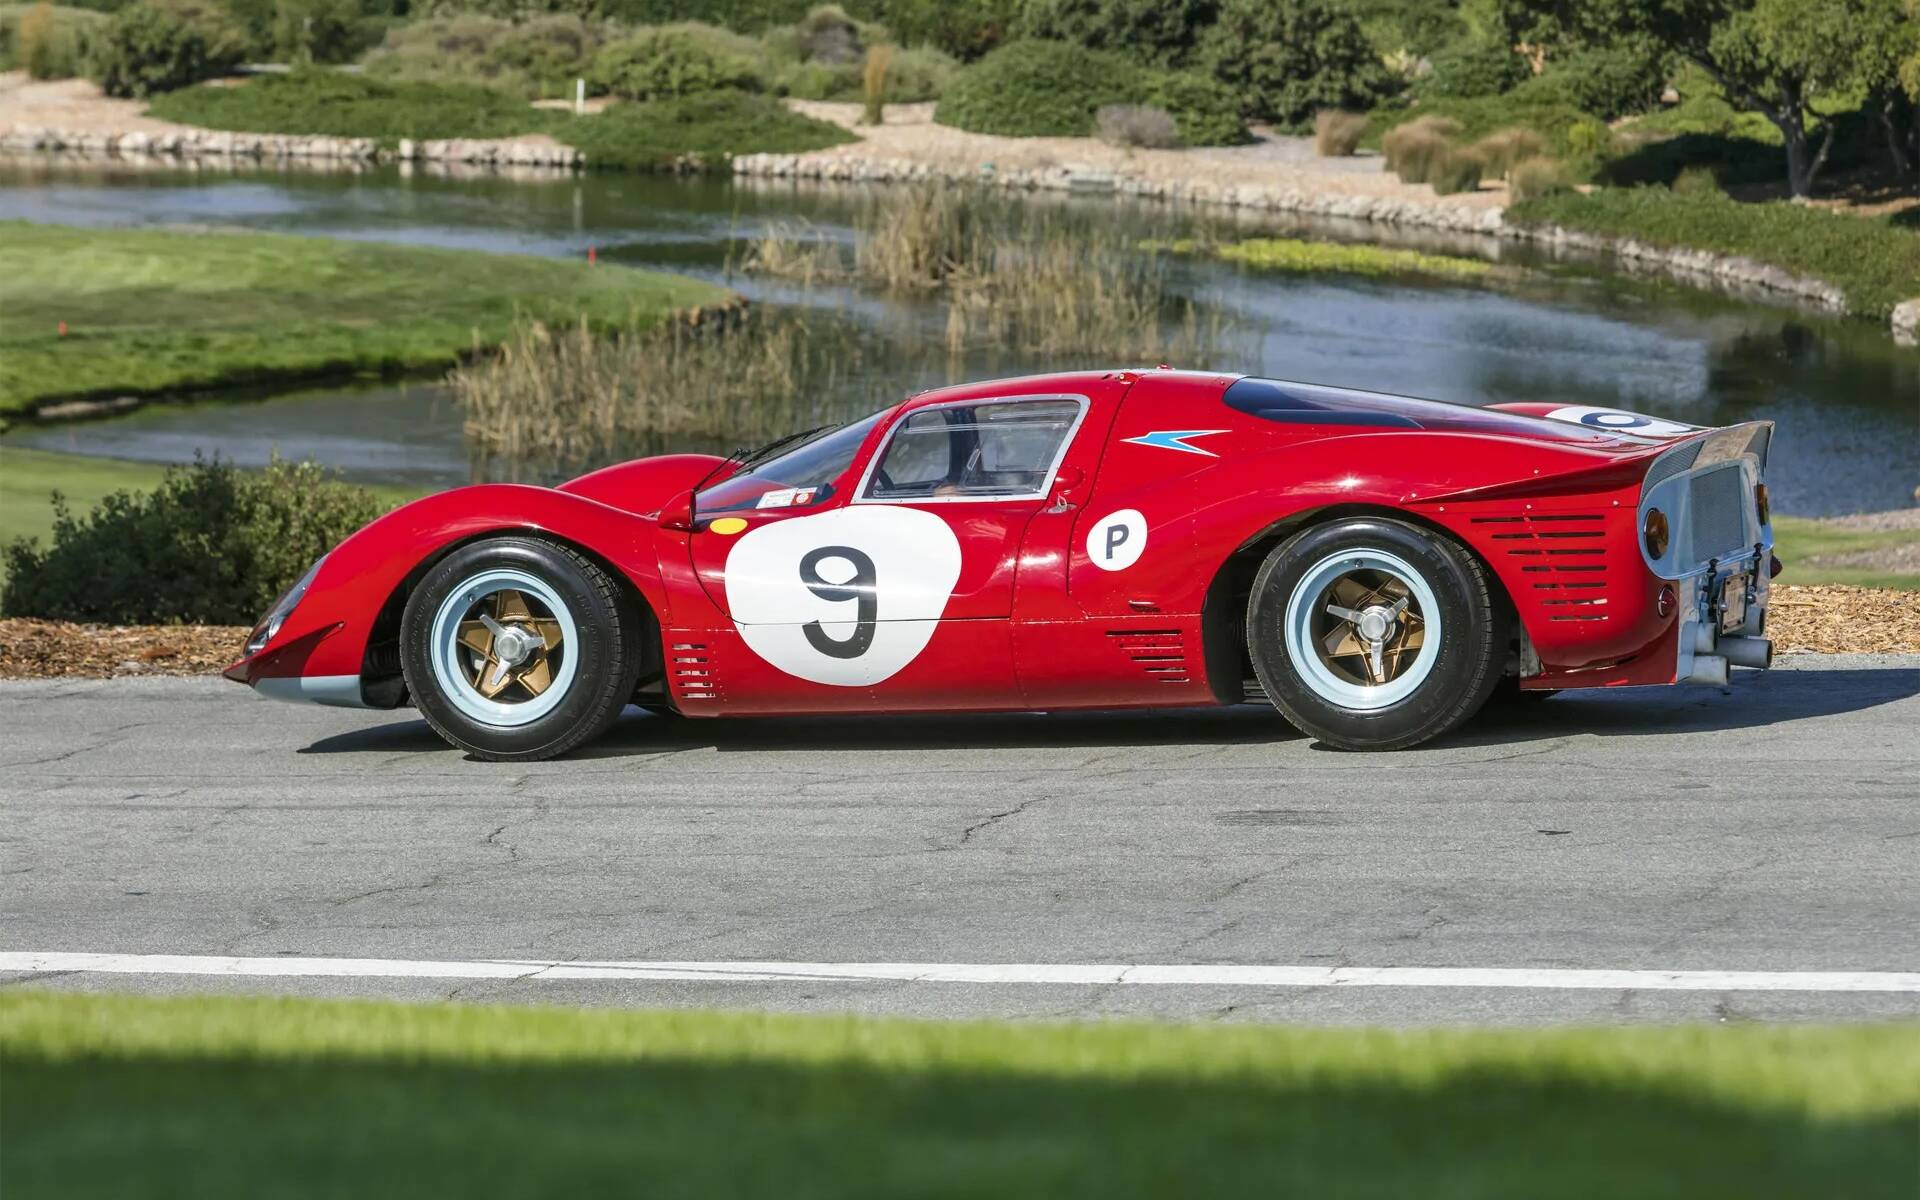 Deux vieilles Ferrari, dont une calcinée, vendues à des prix démentiels 585275-deux-vieilles-ferrari-dont-une-calcinee-vendues-a-des-prix-dementiels